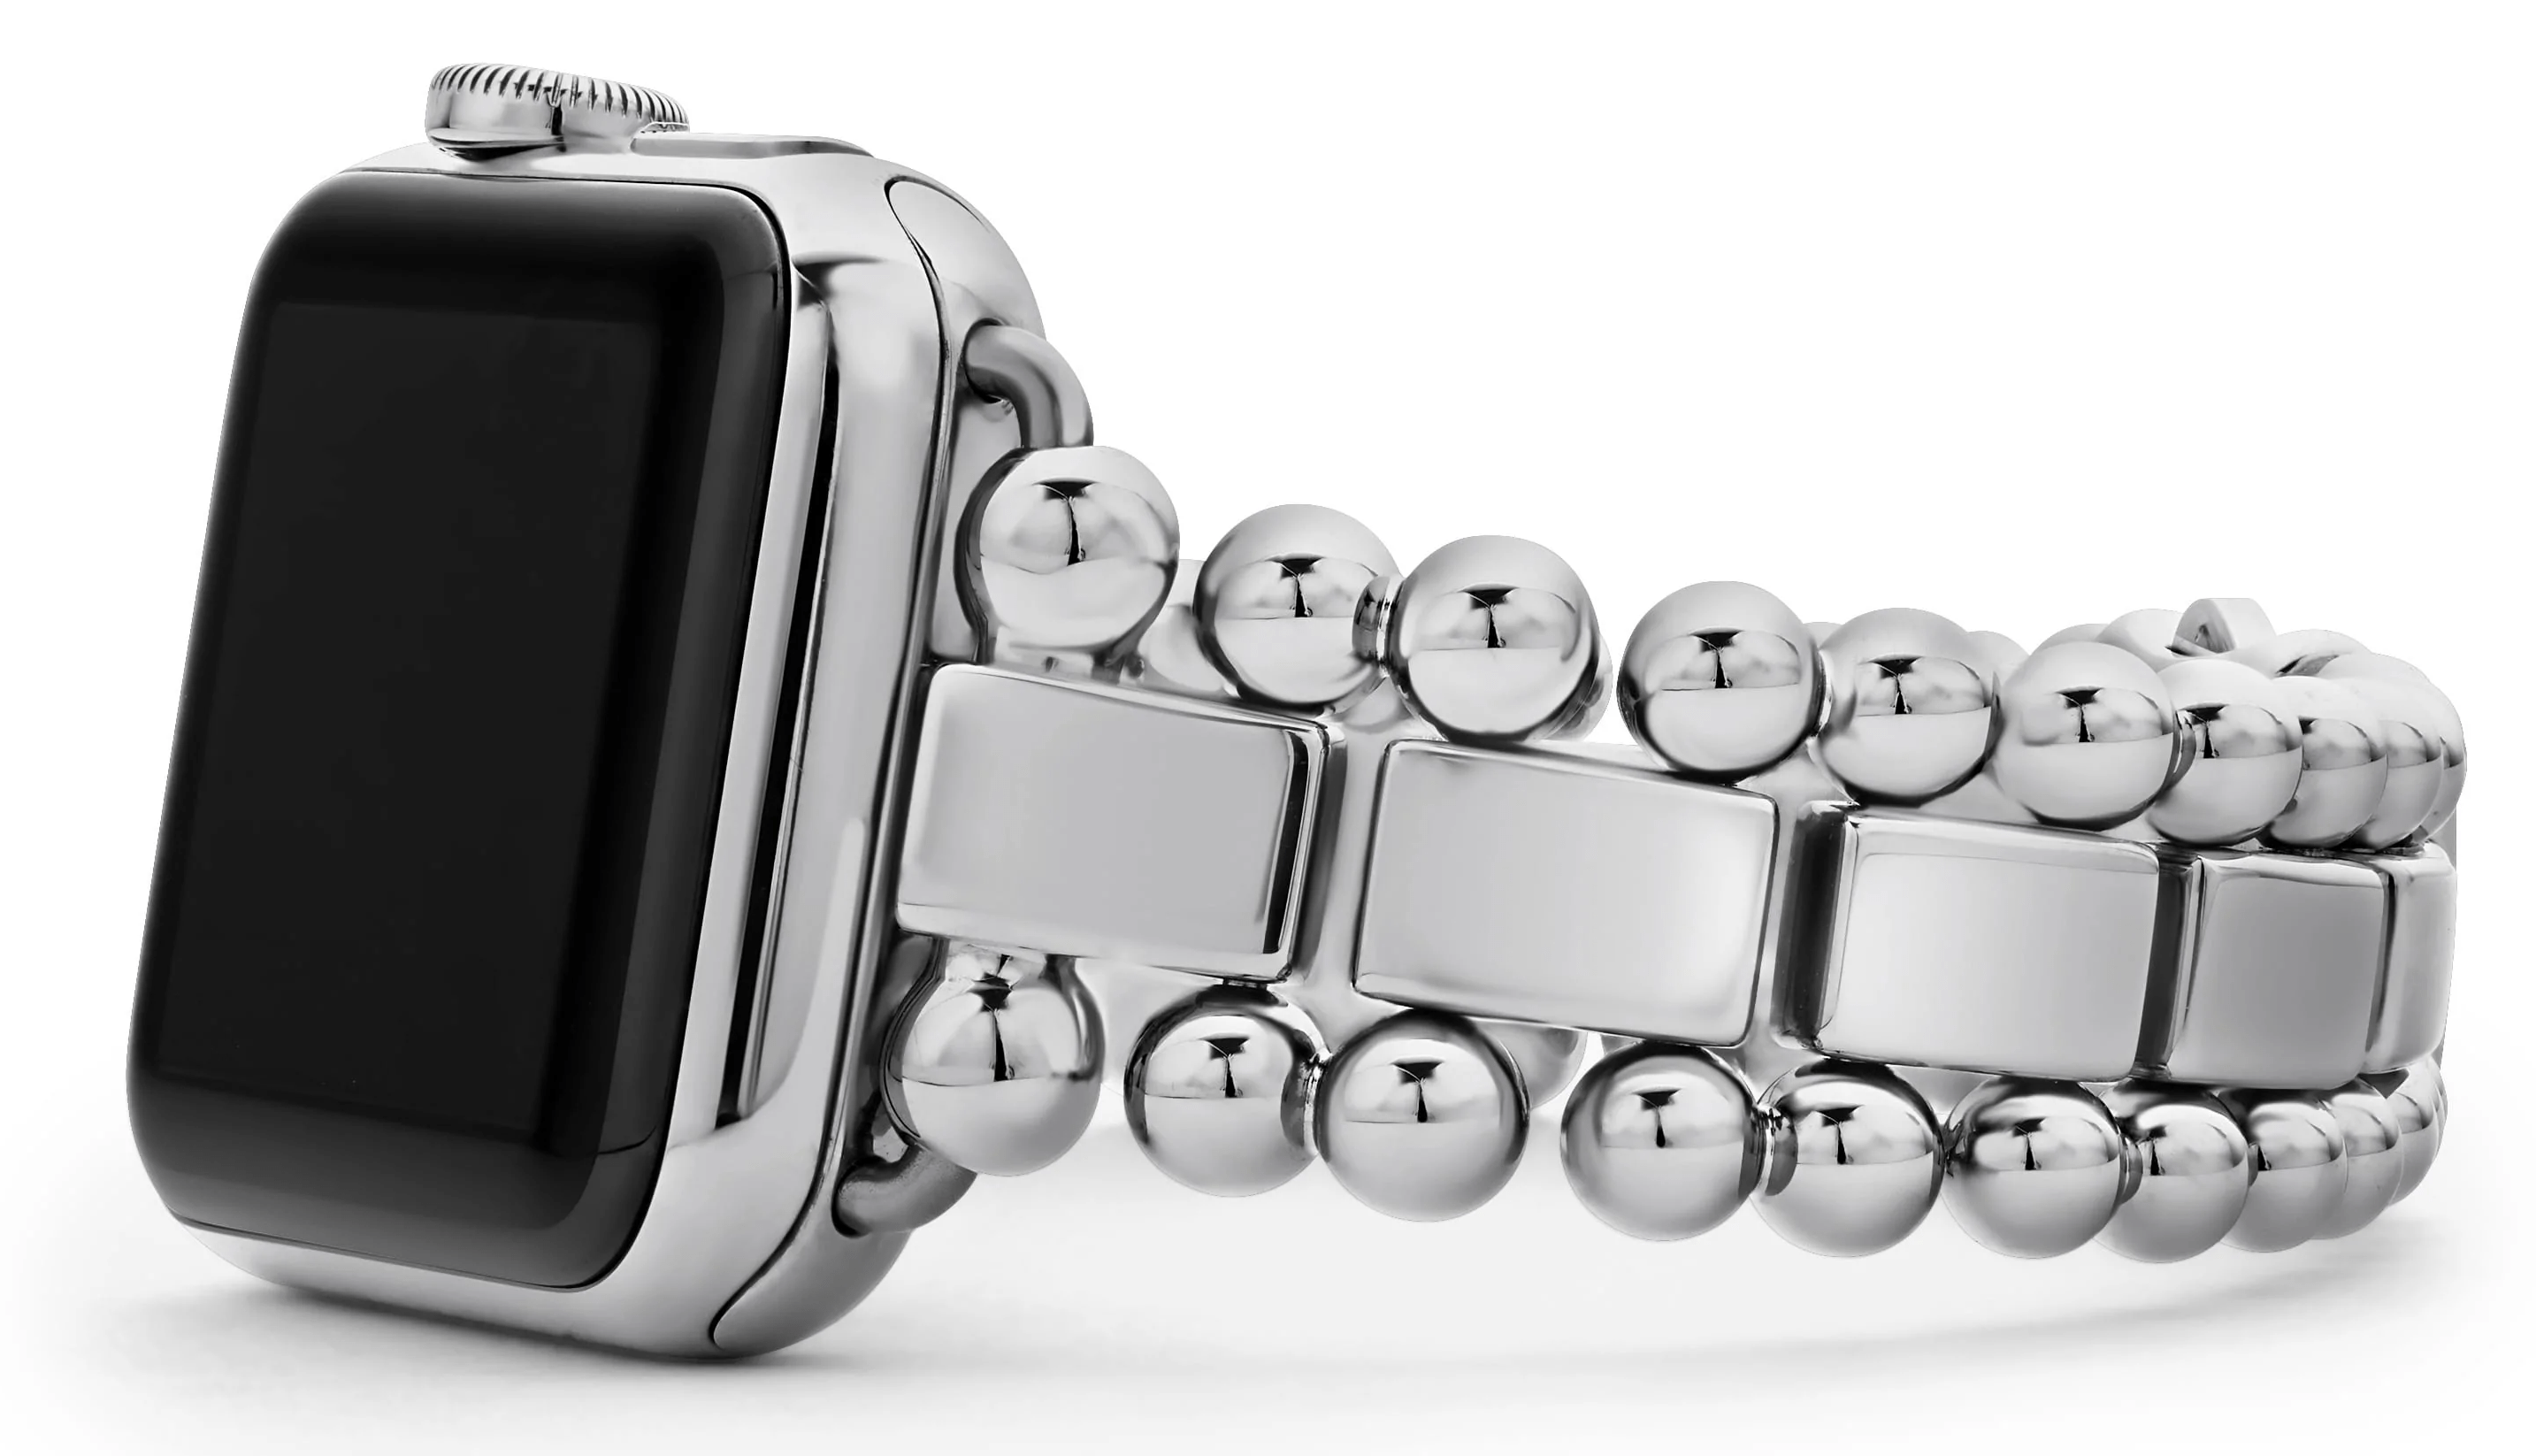 Smart Caviar Stainless Steel Watch Bracelet